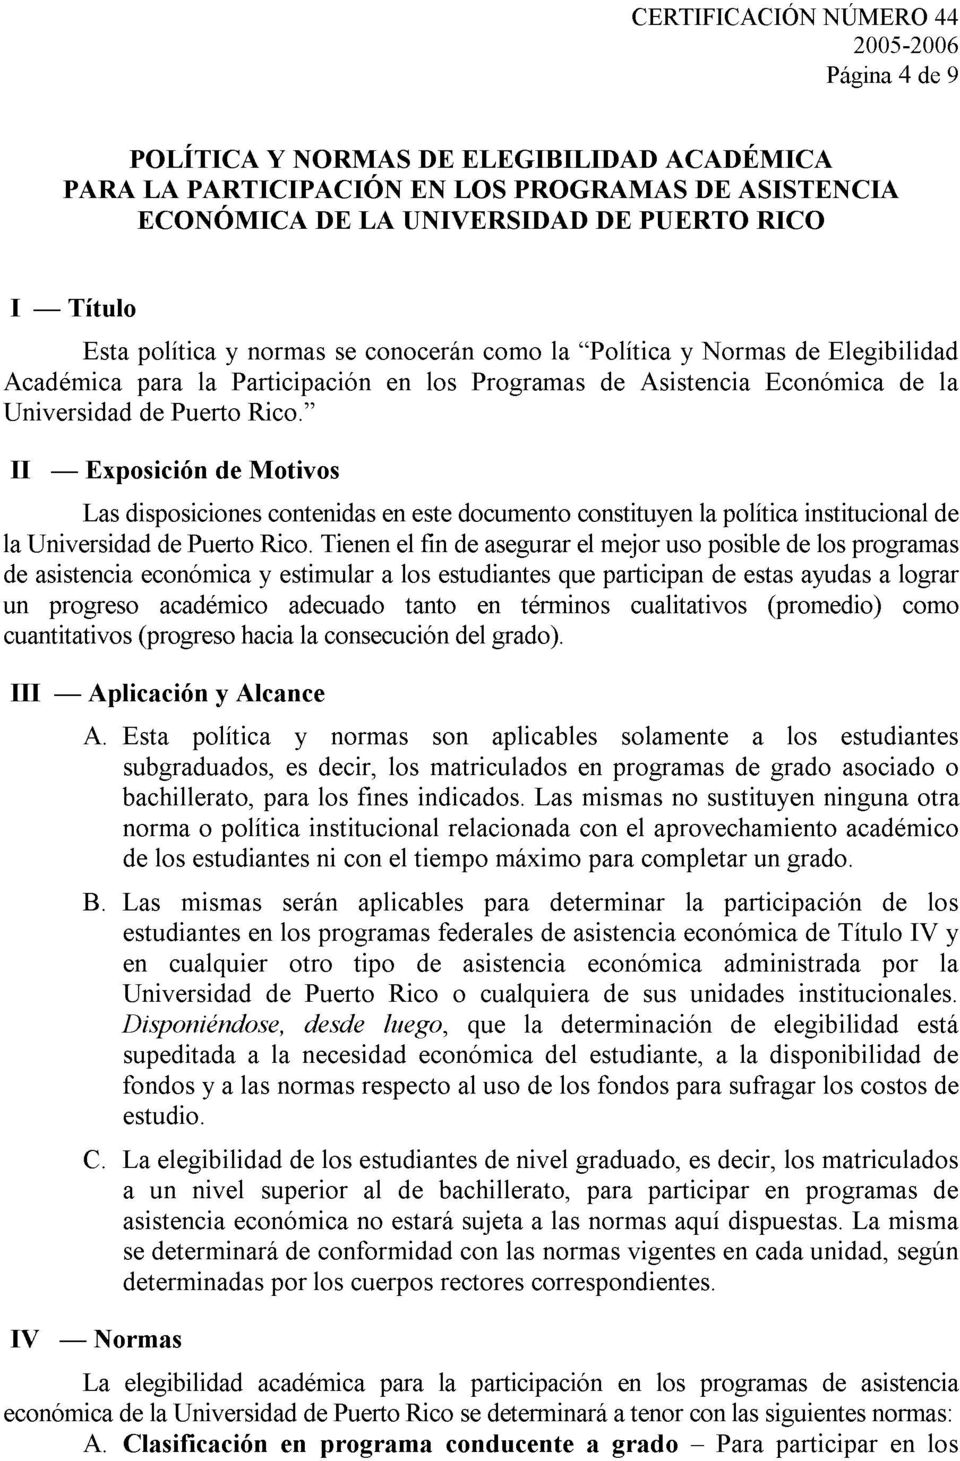 I1 - Exposición de Motivos Las disposiciones contenidas en este documento constituyen la política institucional de la Universidad de Puerto Rico.